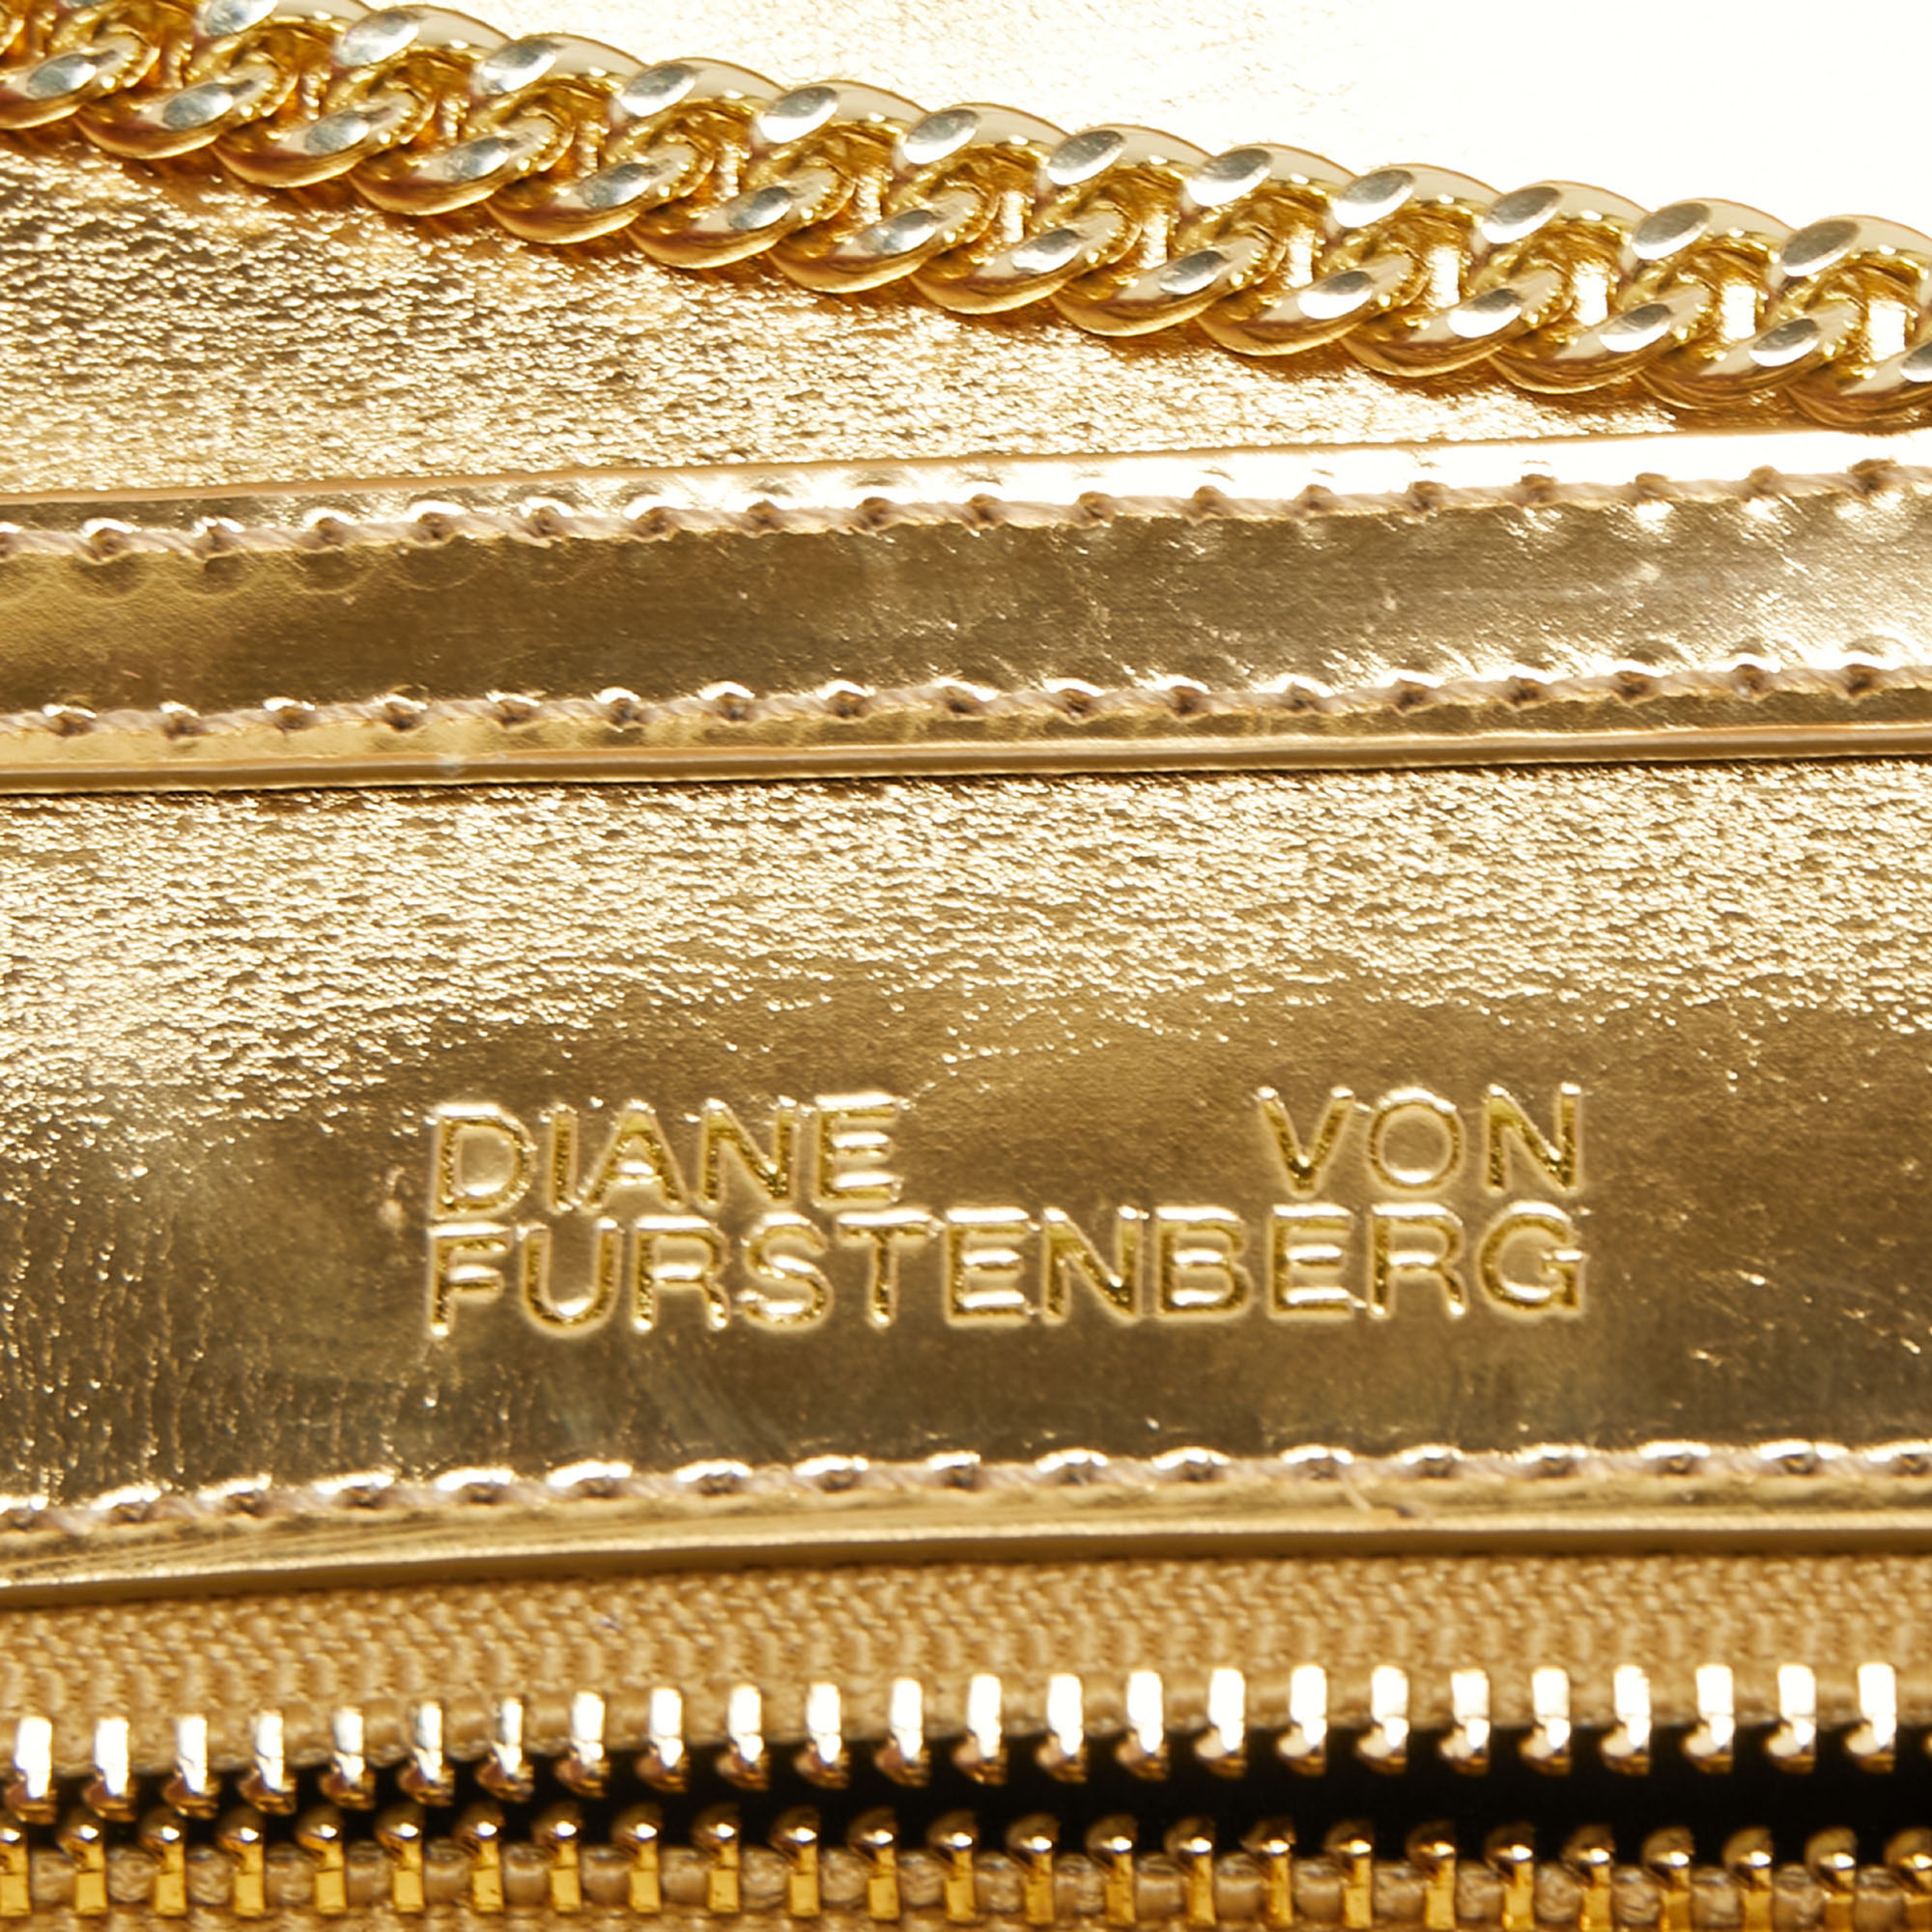 Diane Von Furstenberg Silver Laminated Leather Flap Chain Bag